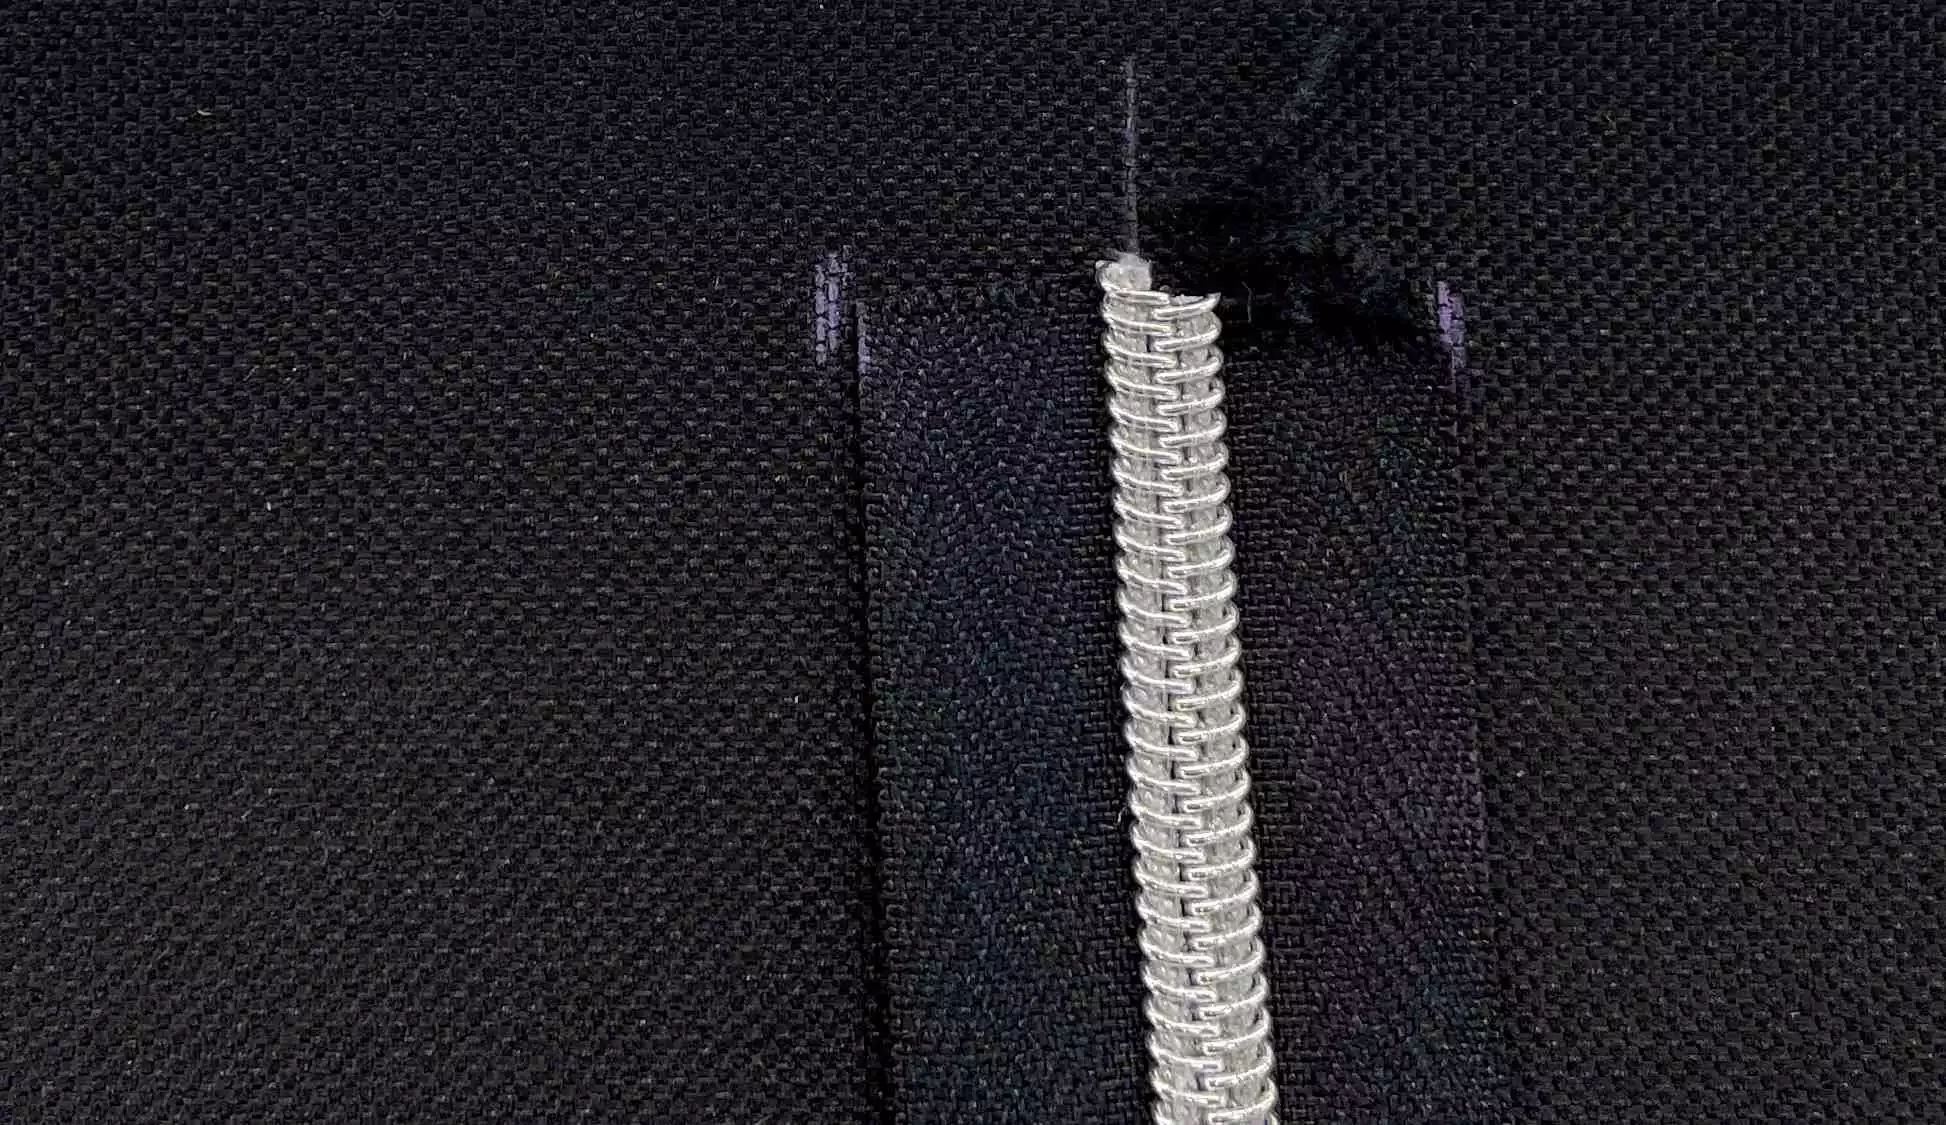 Simple-zippered-pouch-step2-mark-zipper-width.jpg